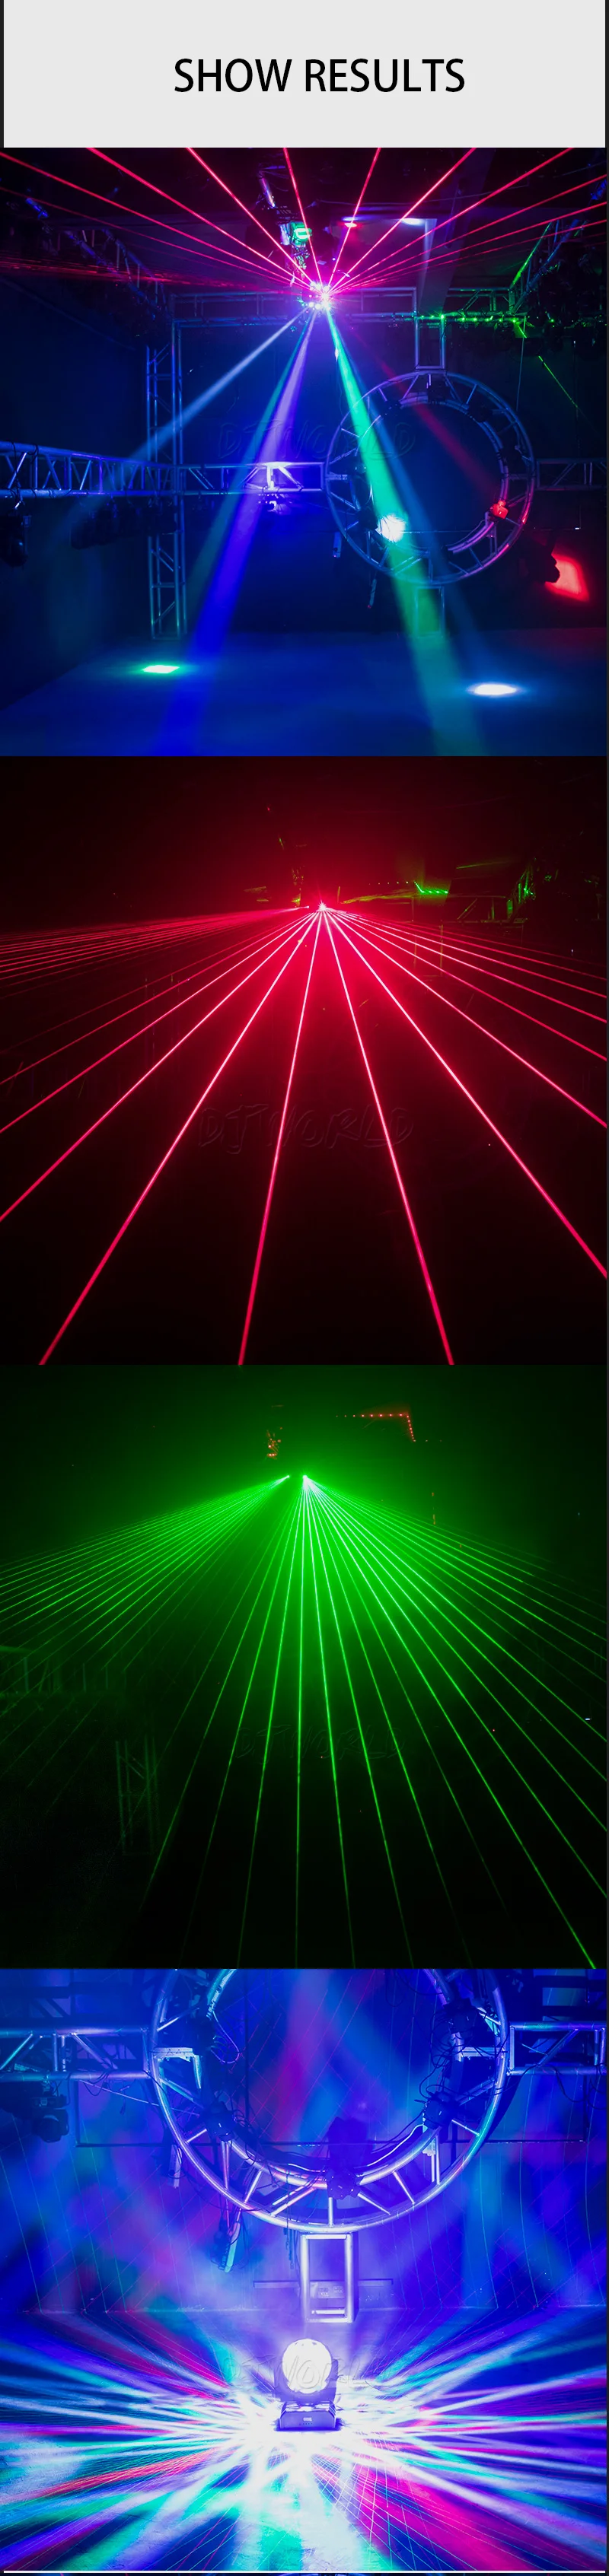 Djworld светодиодный прожектор 16X3 Вт 3в1 лазерный футбольный движущийся головной свет s. trong лазерный эффект высокой яркости День рождения/свадьбы